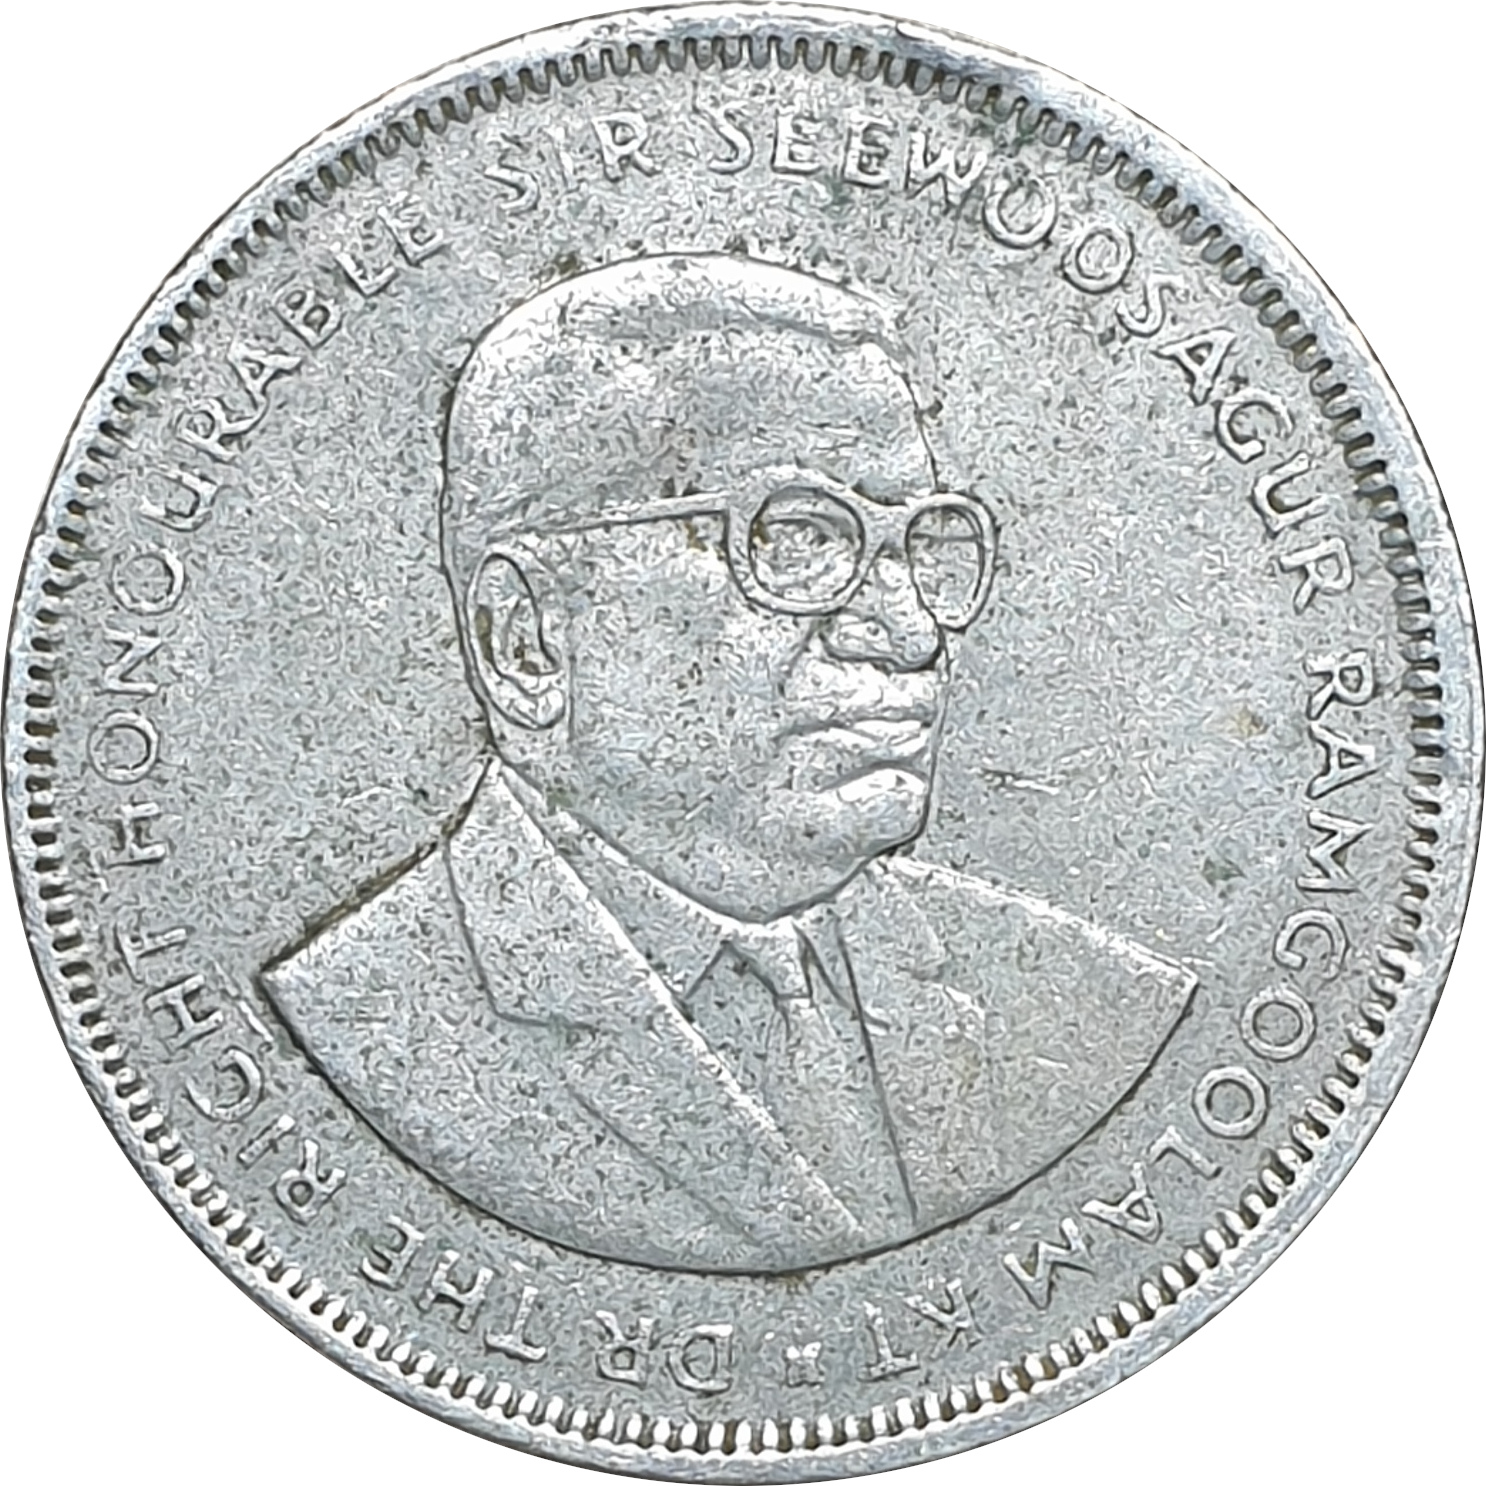 5 rupees - Sir Seewoosagur Ramgoolam